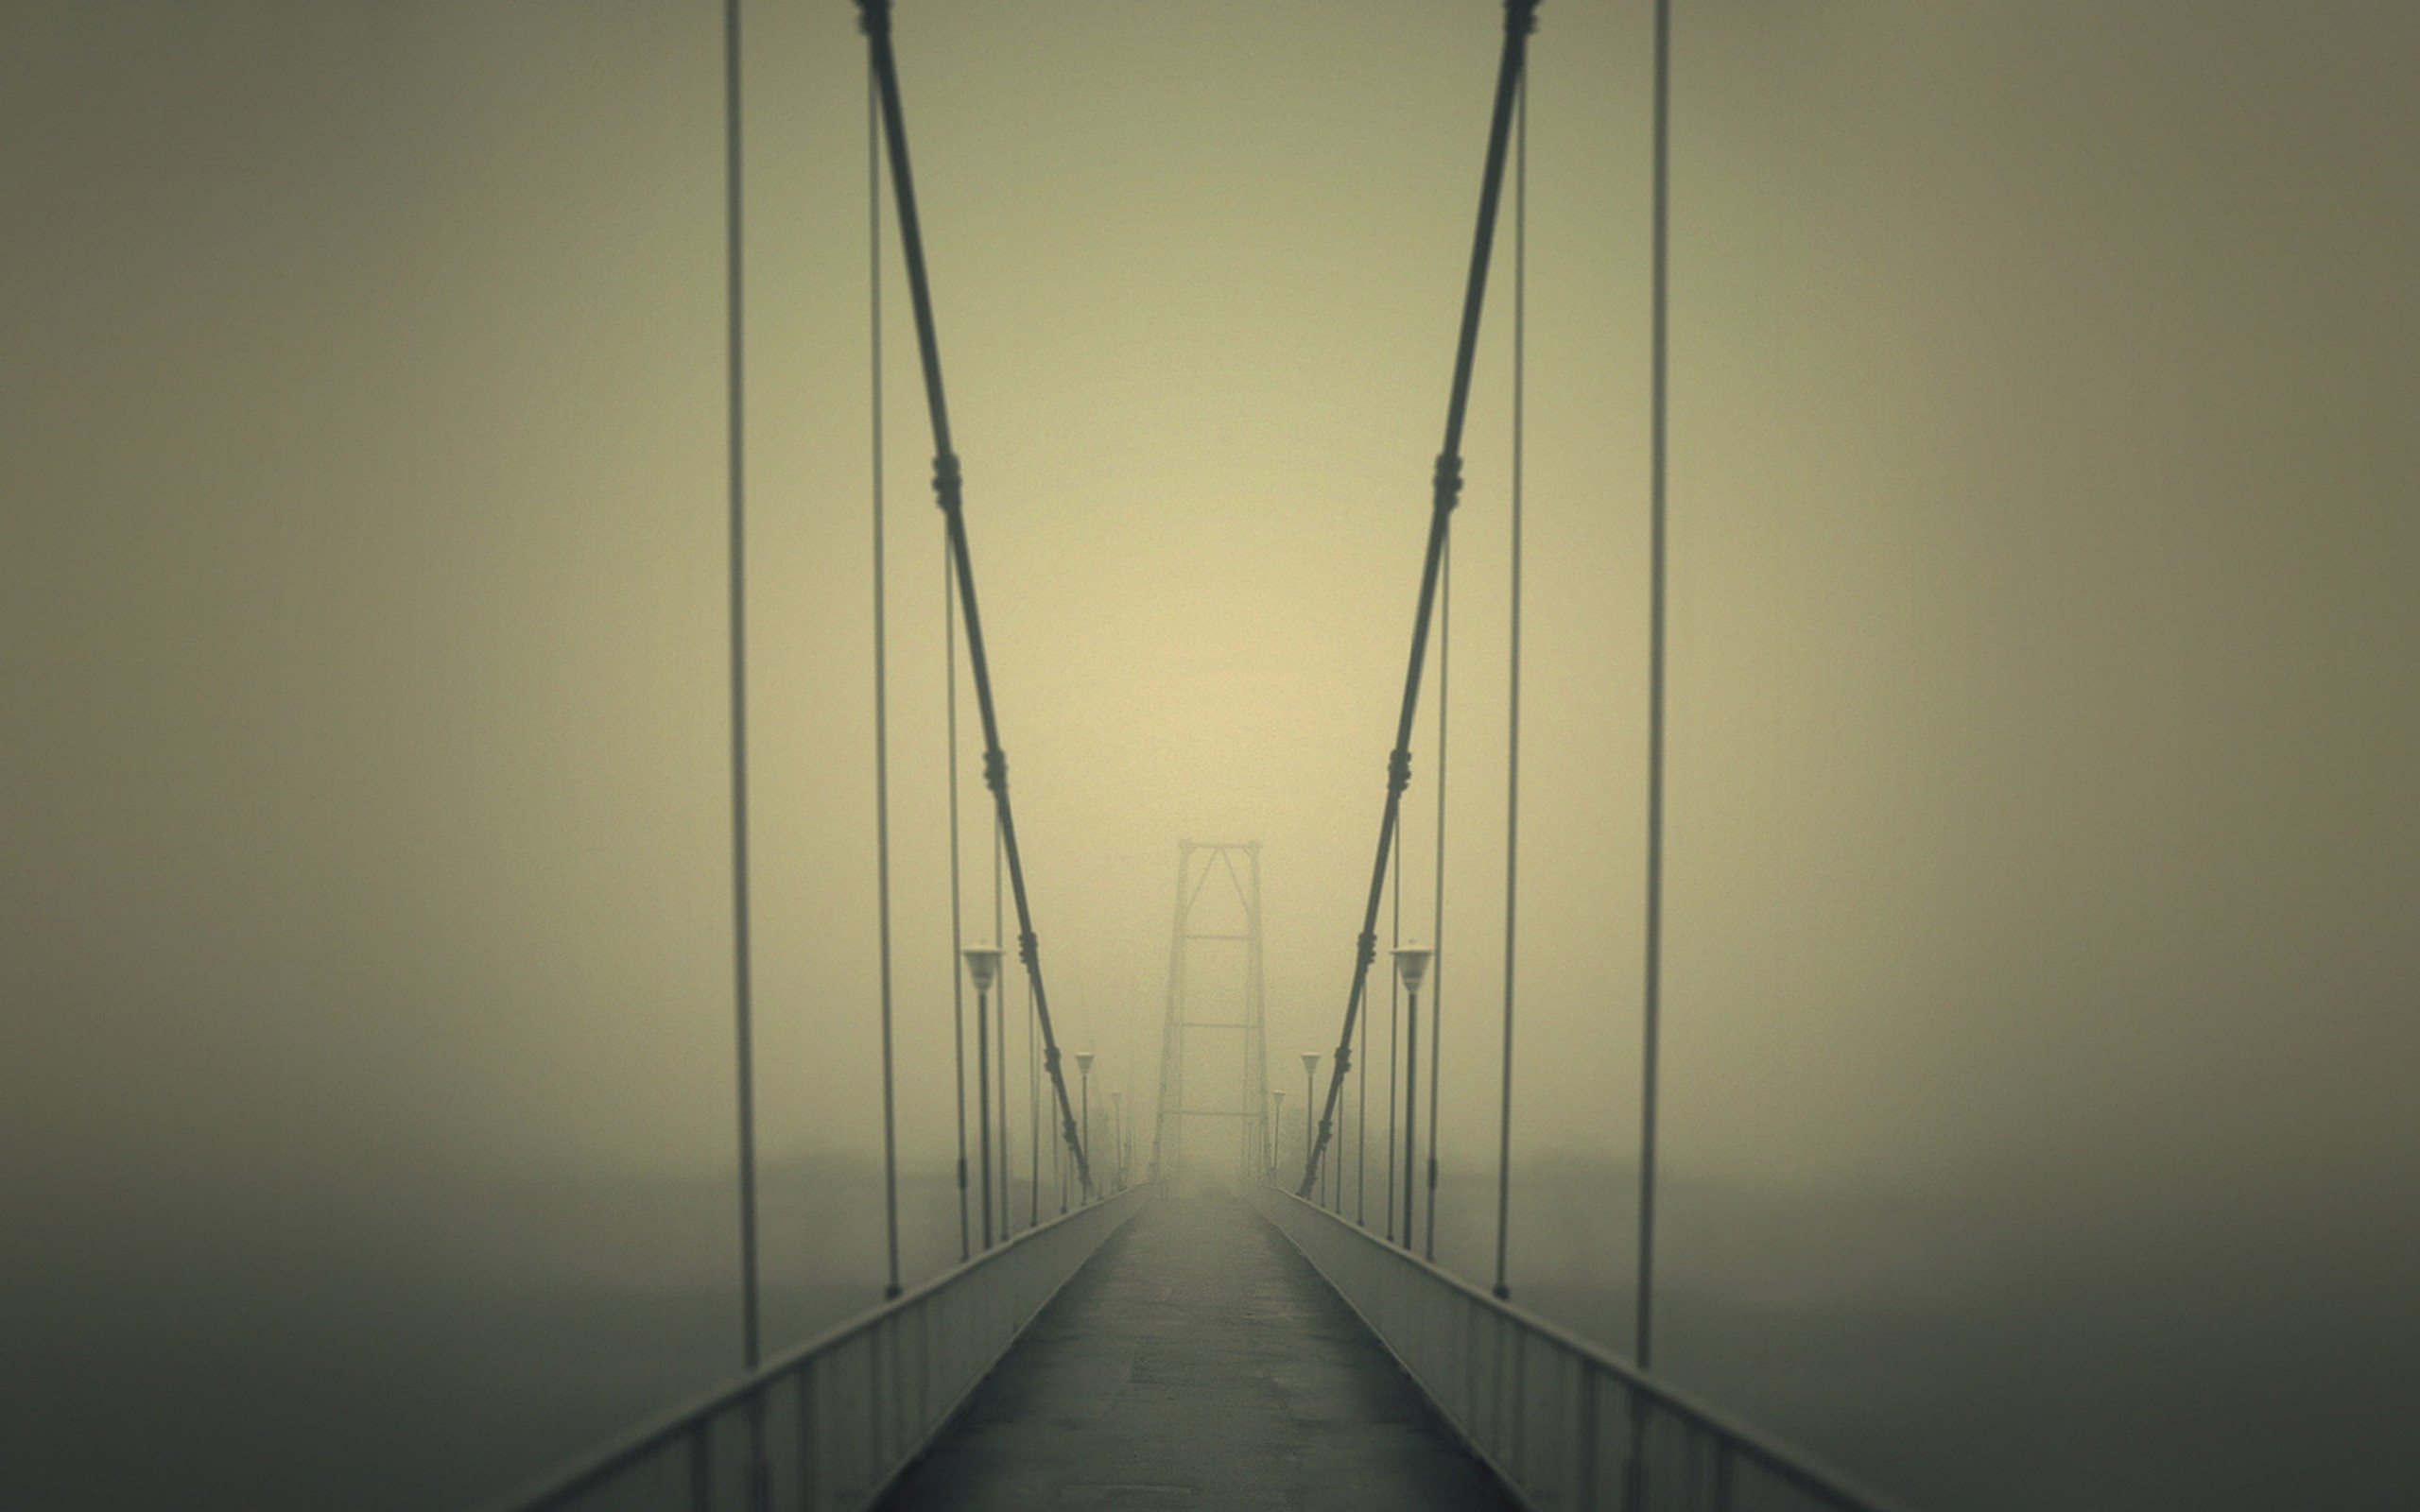 Вид никуда. Мост в тумане. Подвесной мост в тумане. Мост уходящий в туман. Подвесной мост с перспективой.